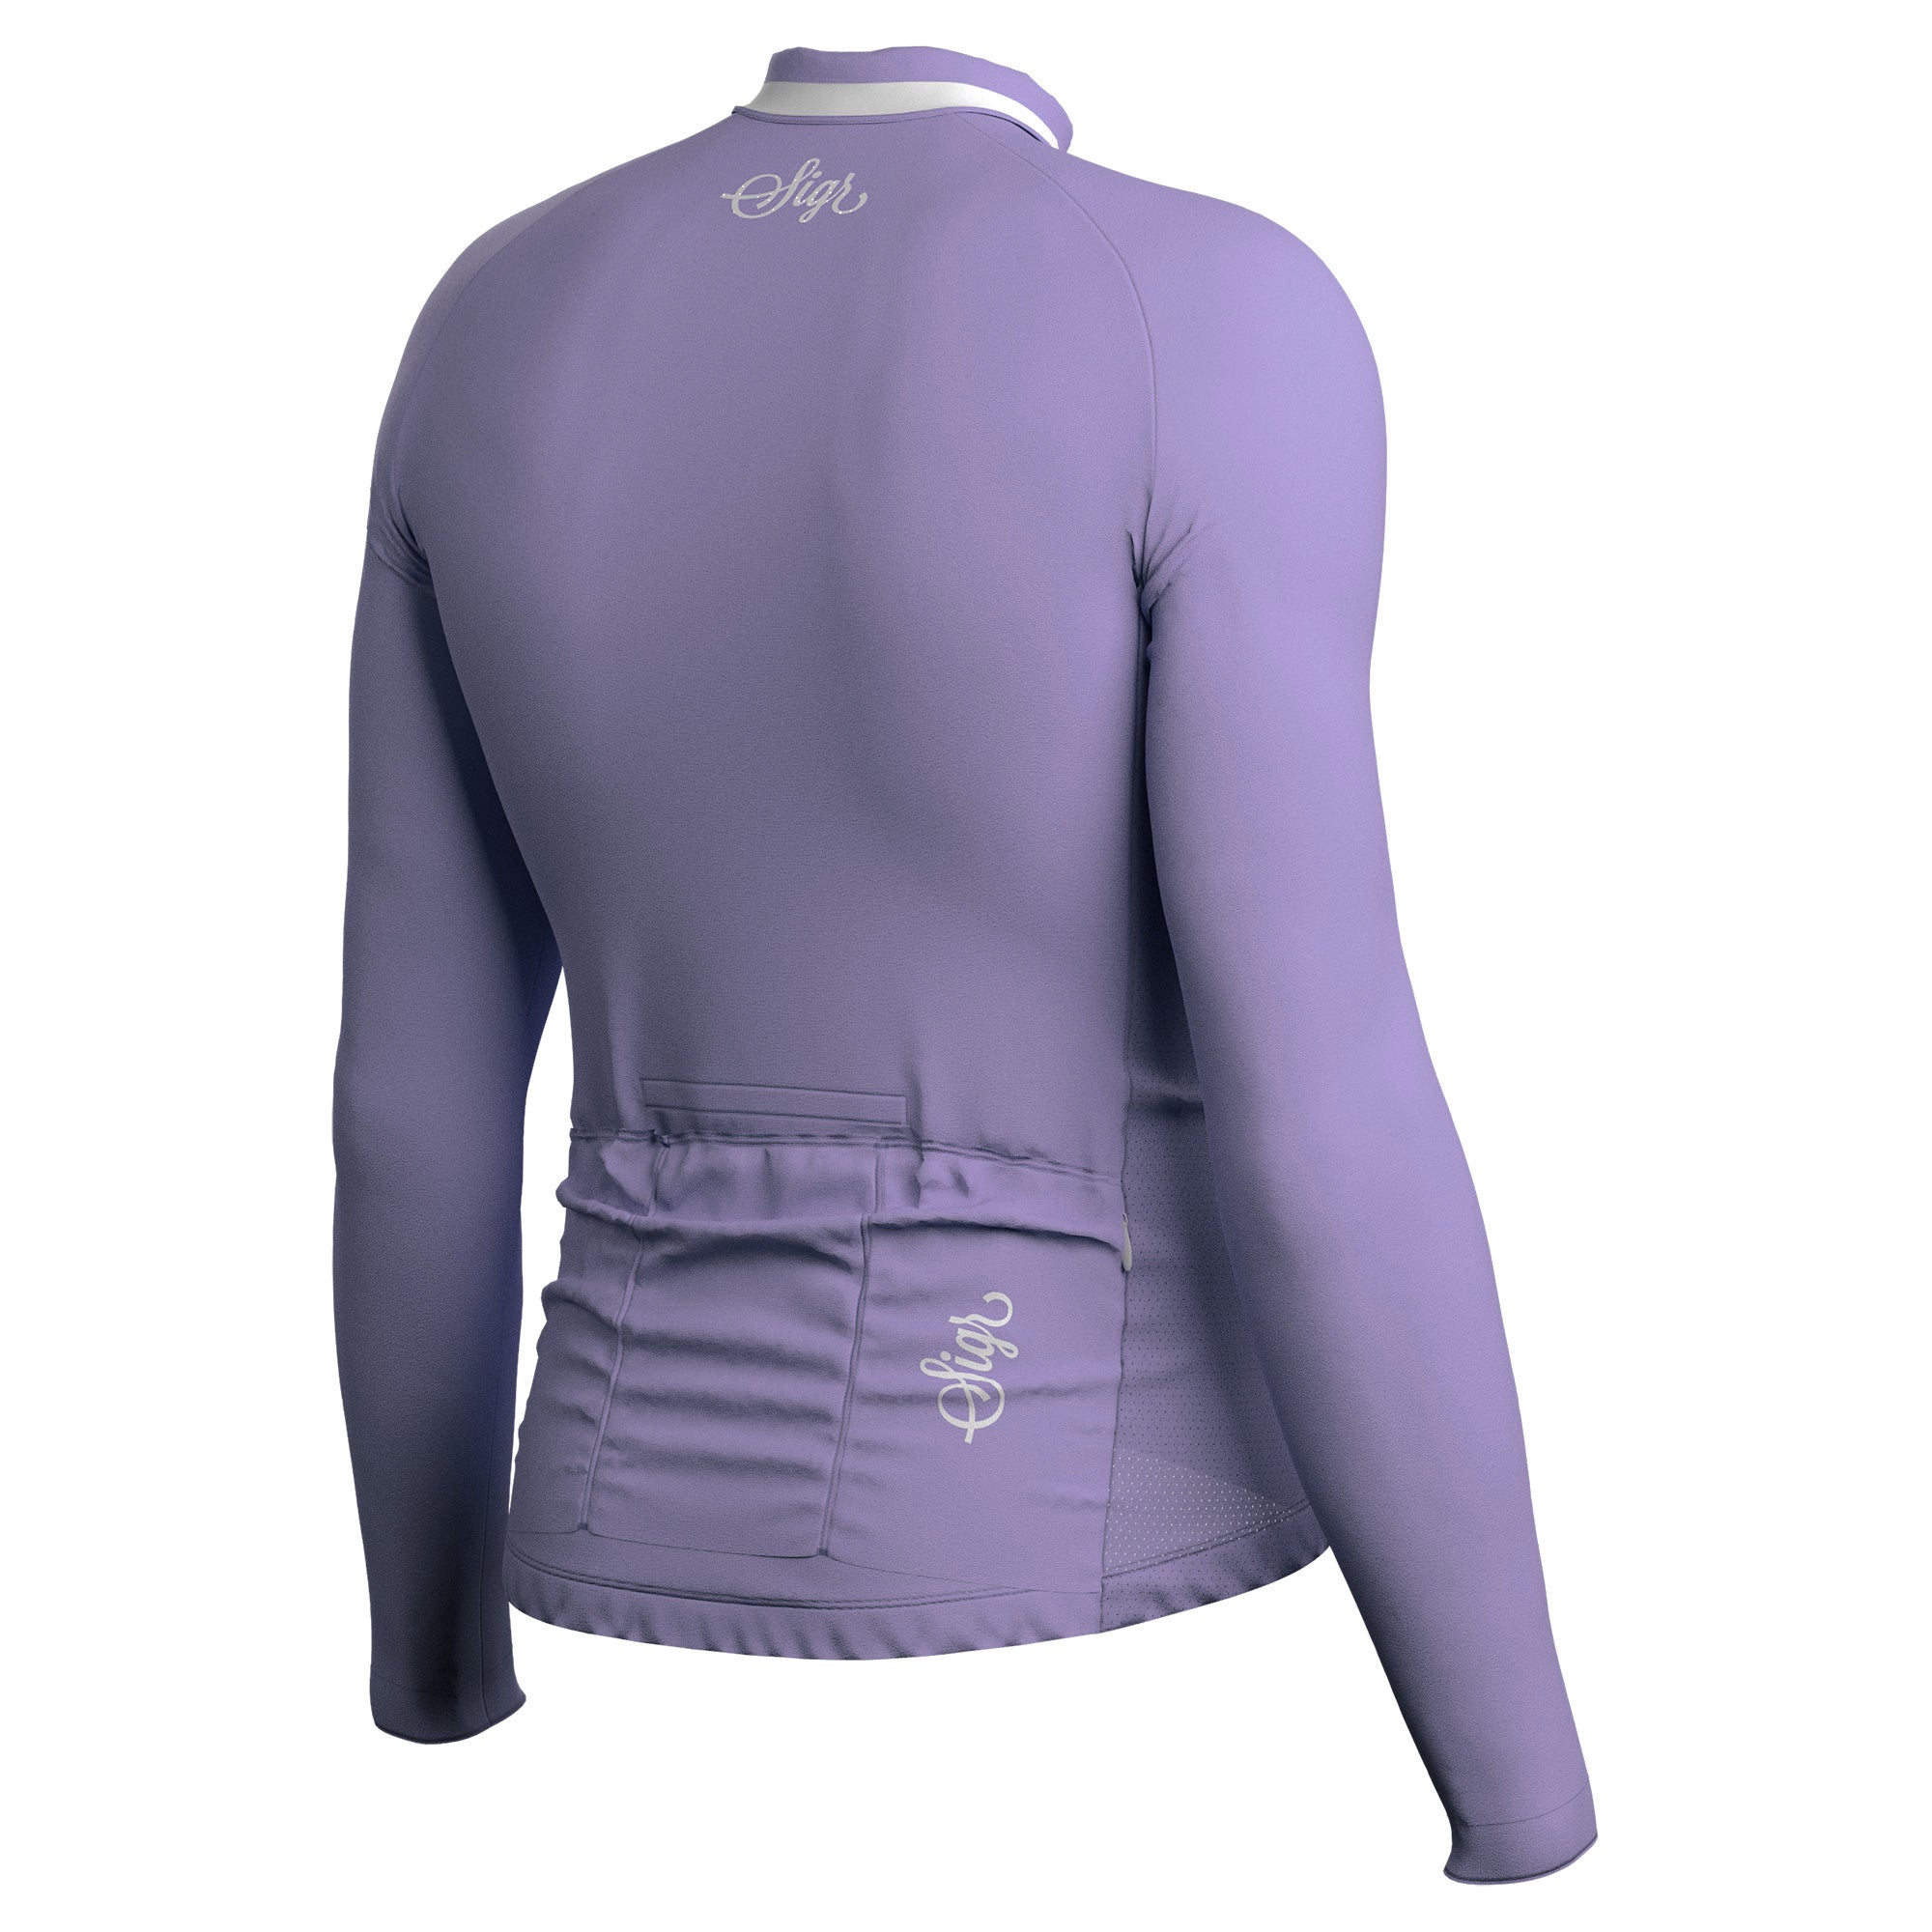 Wildflower - Light Purple Long Sleeved Jersey for Men